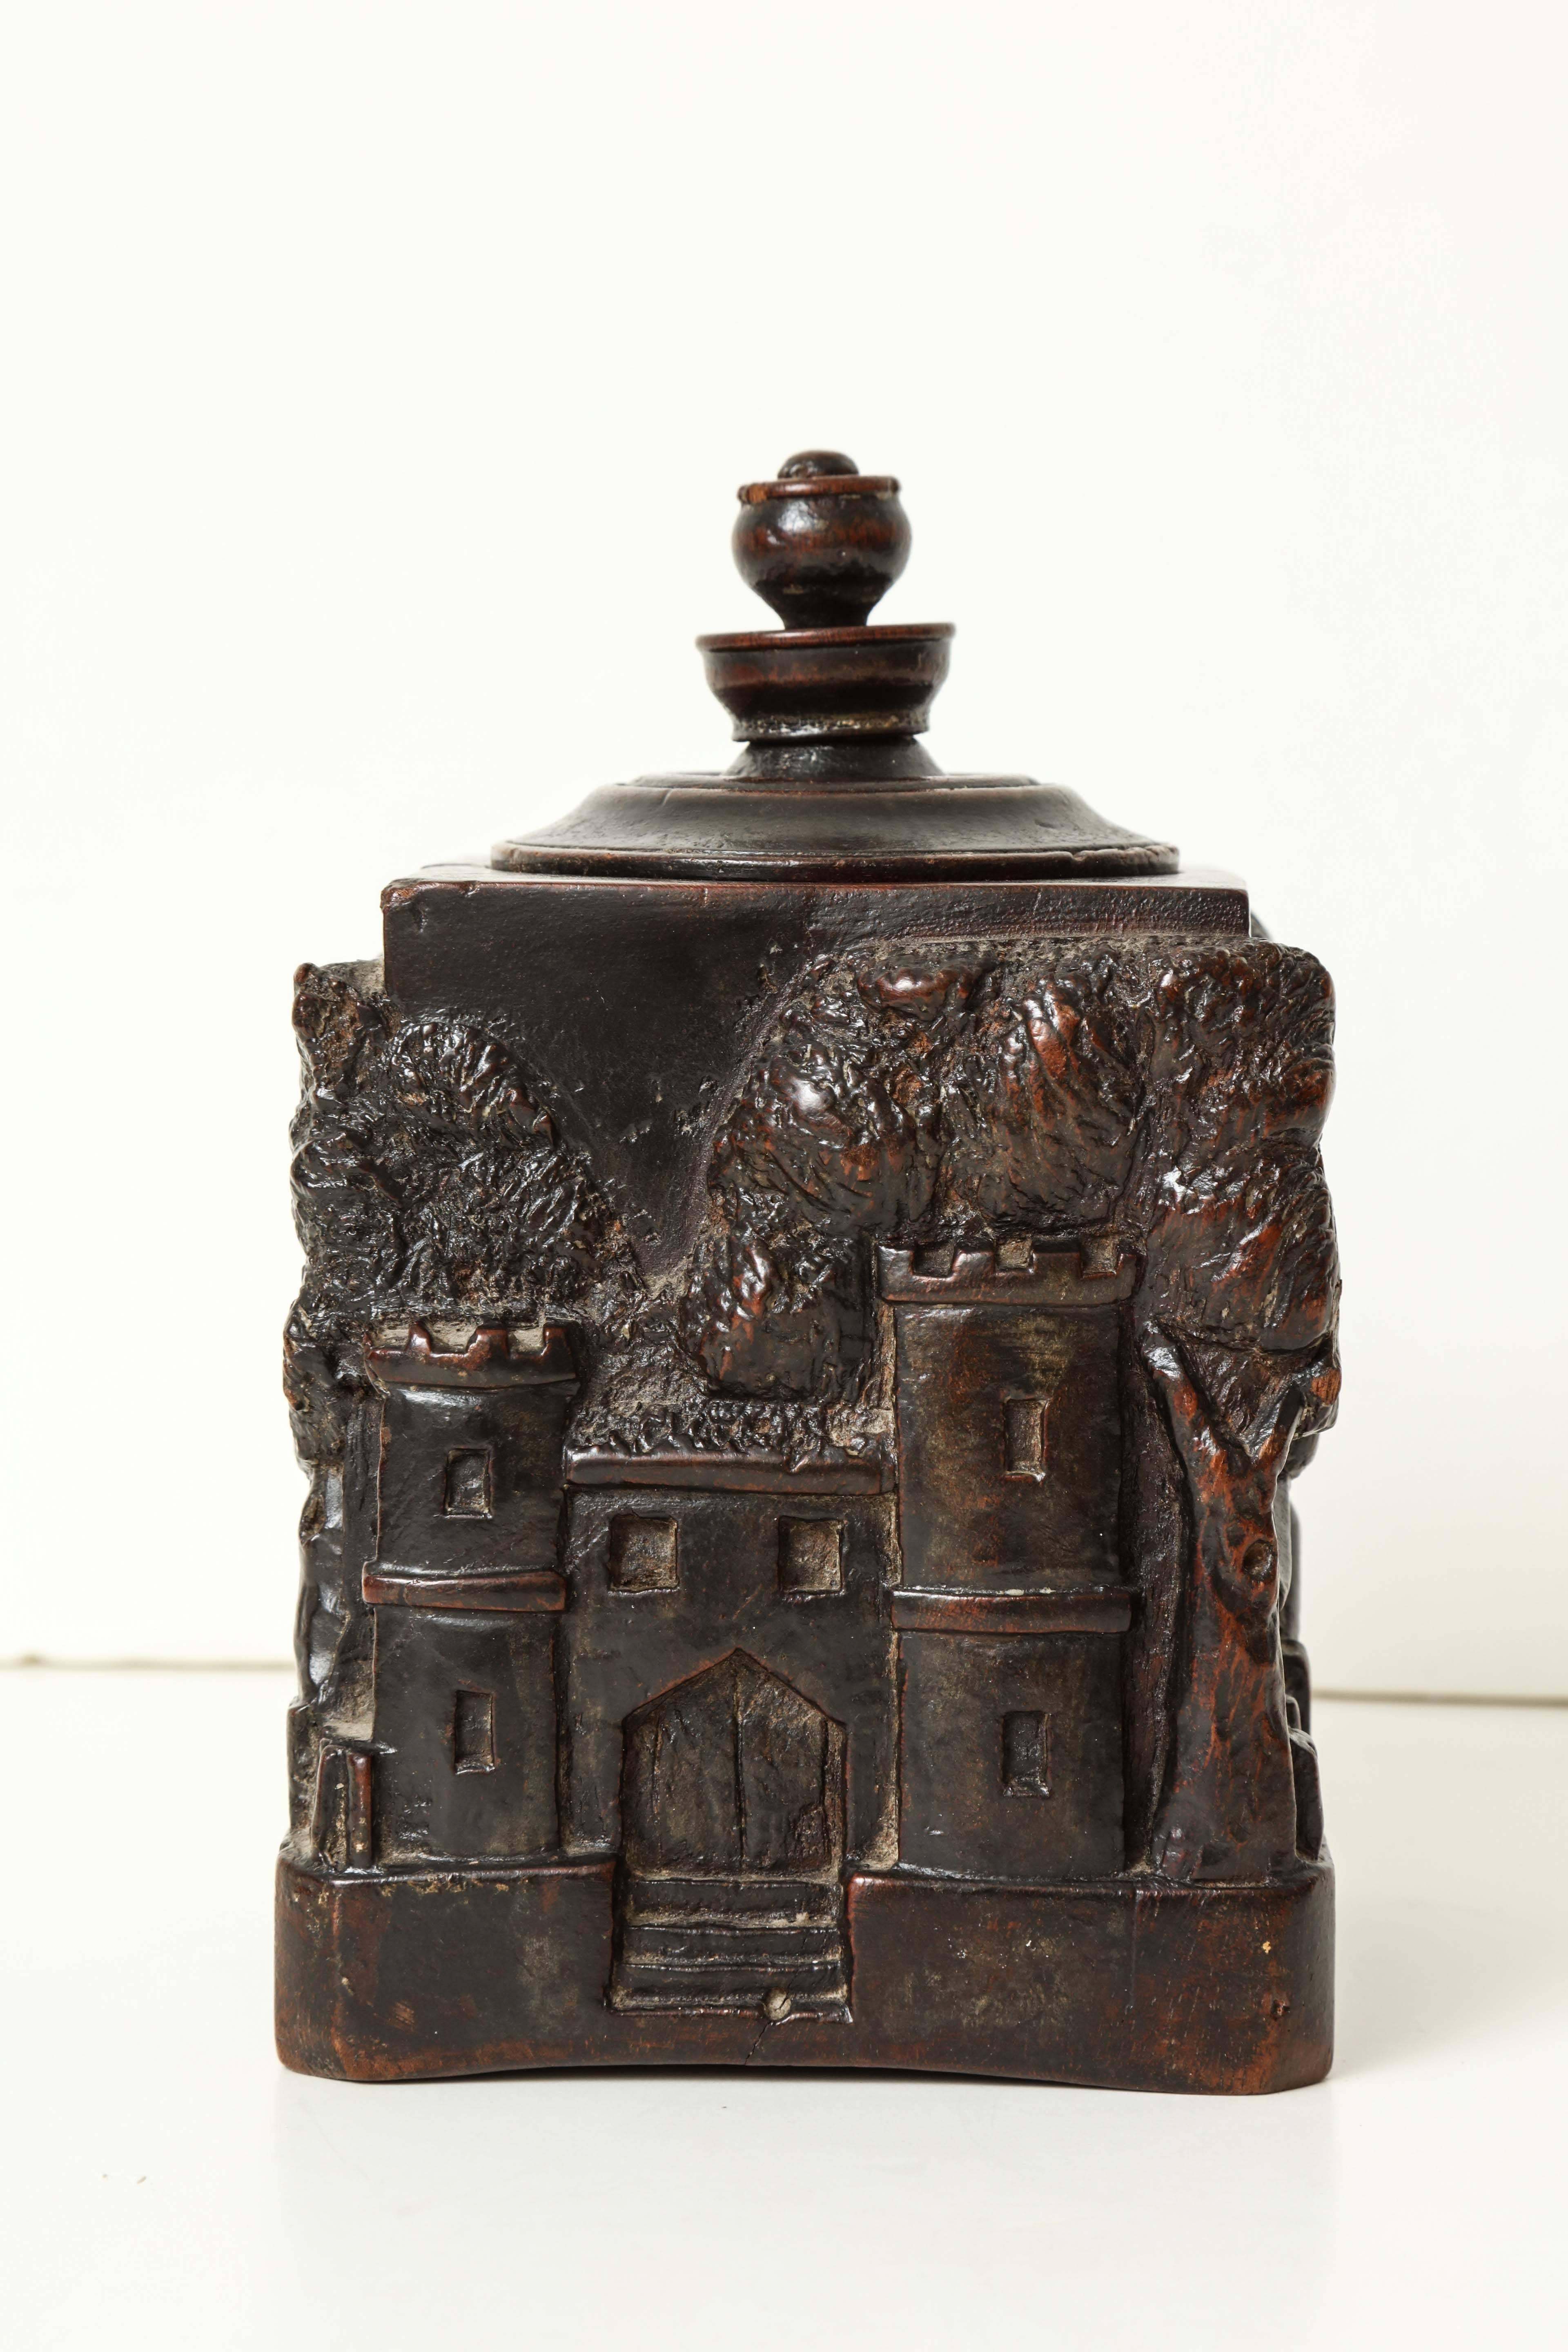 Walnut Unusual 18th Century Tobacco Jar, Possibly Irish